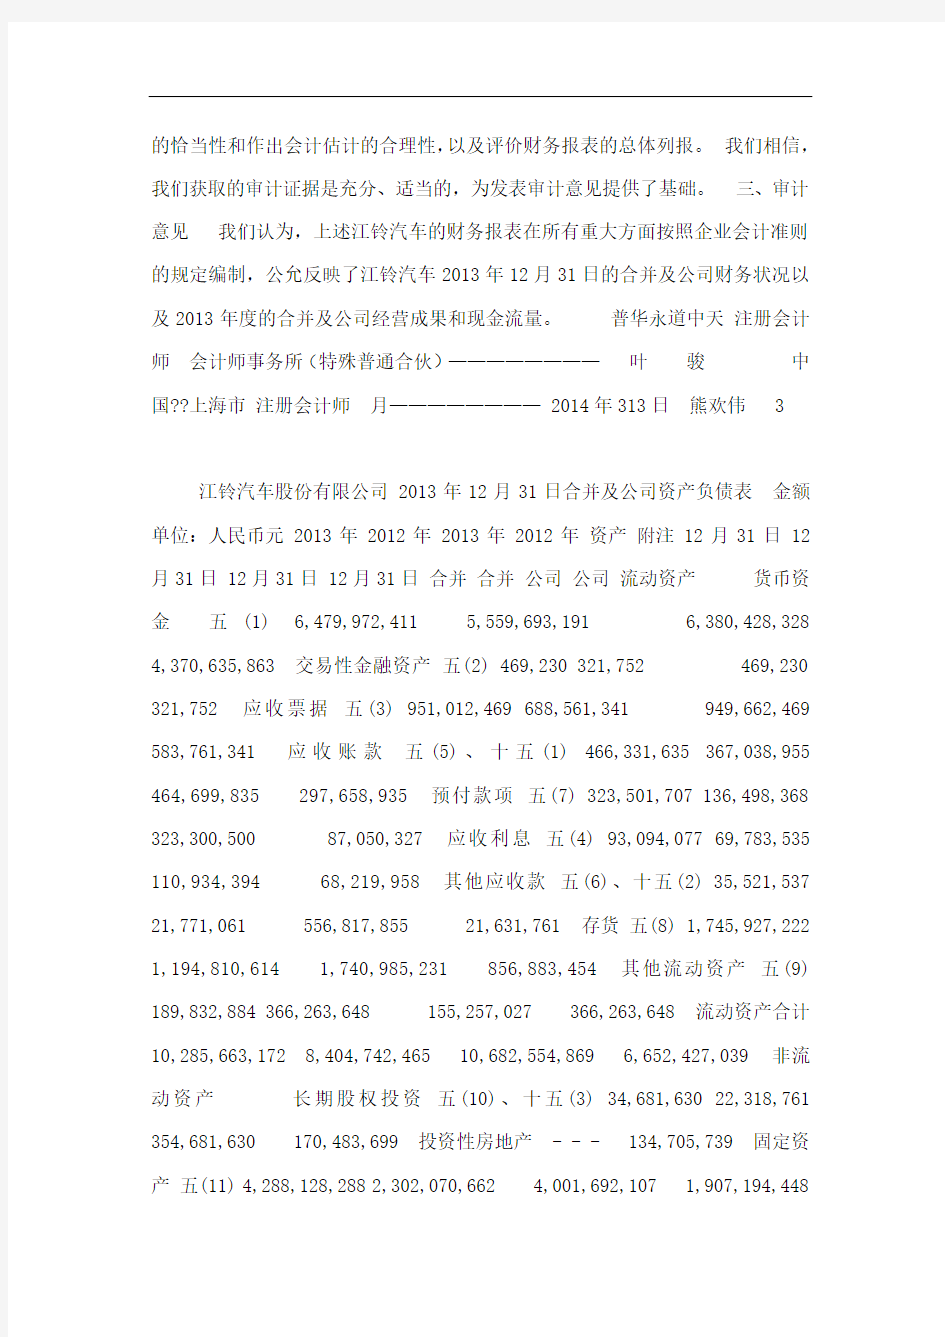 江铃汽车股份有限公司2013年度财务报表及审计报告